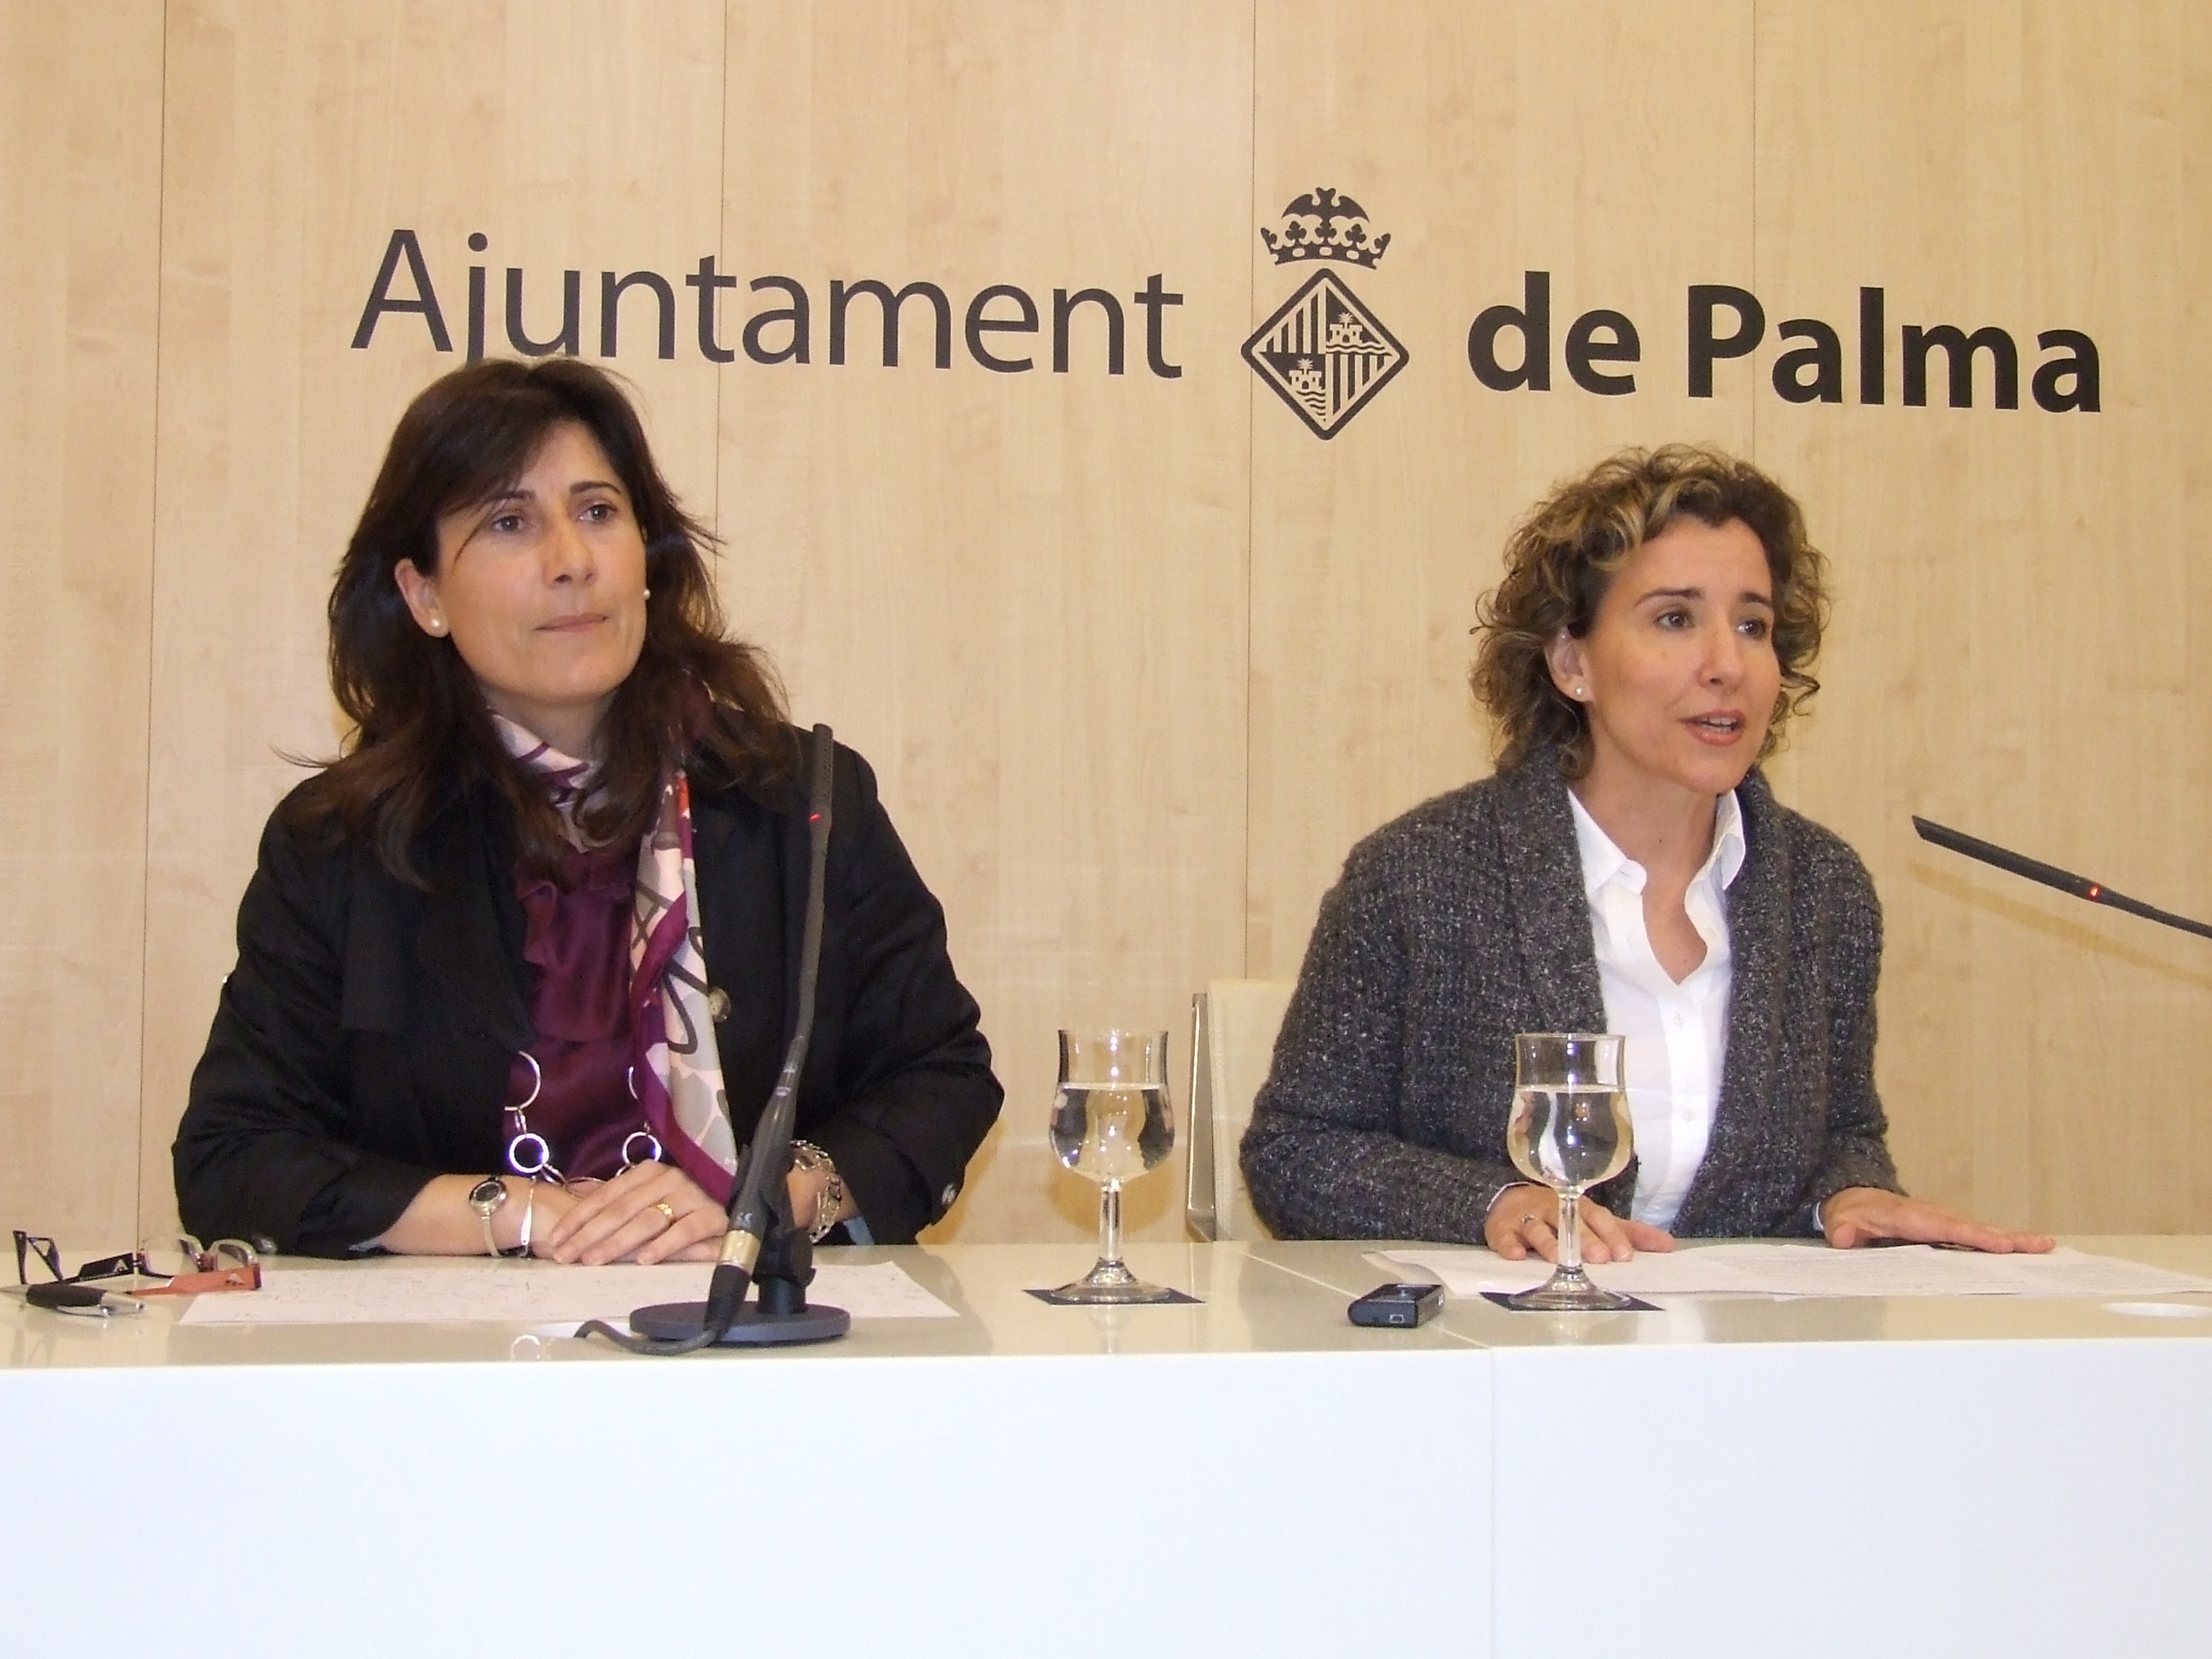 Das Verteidigungsministerium und das Rathaus von Palma treffen ein Abkommen zur Verringerung um die Hälte der Anzahl der geplanten Wohnungen in Son Busquets